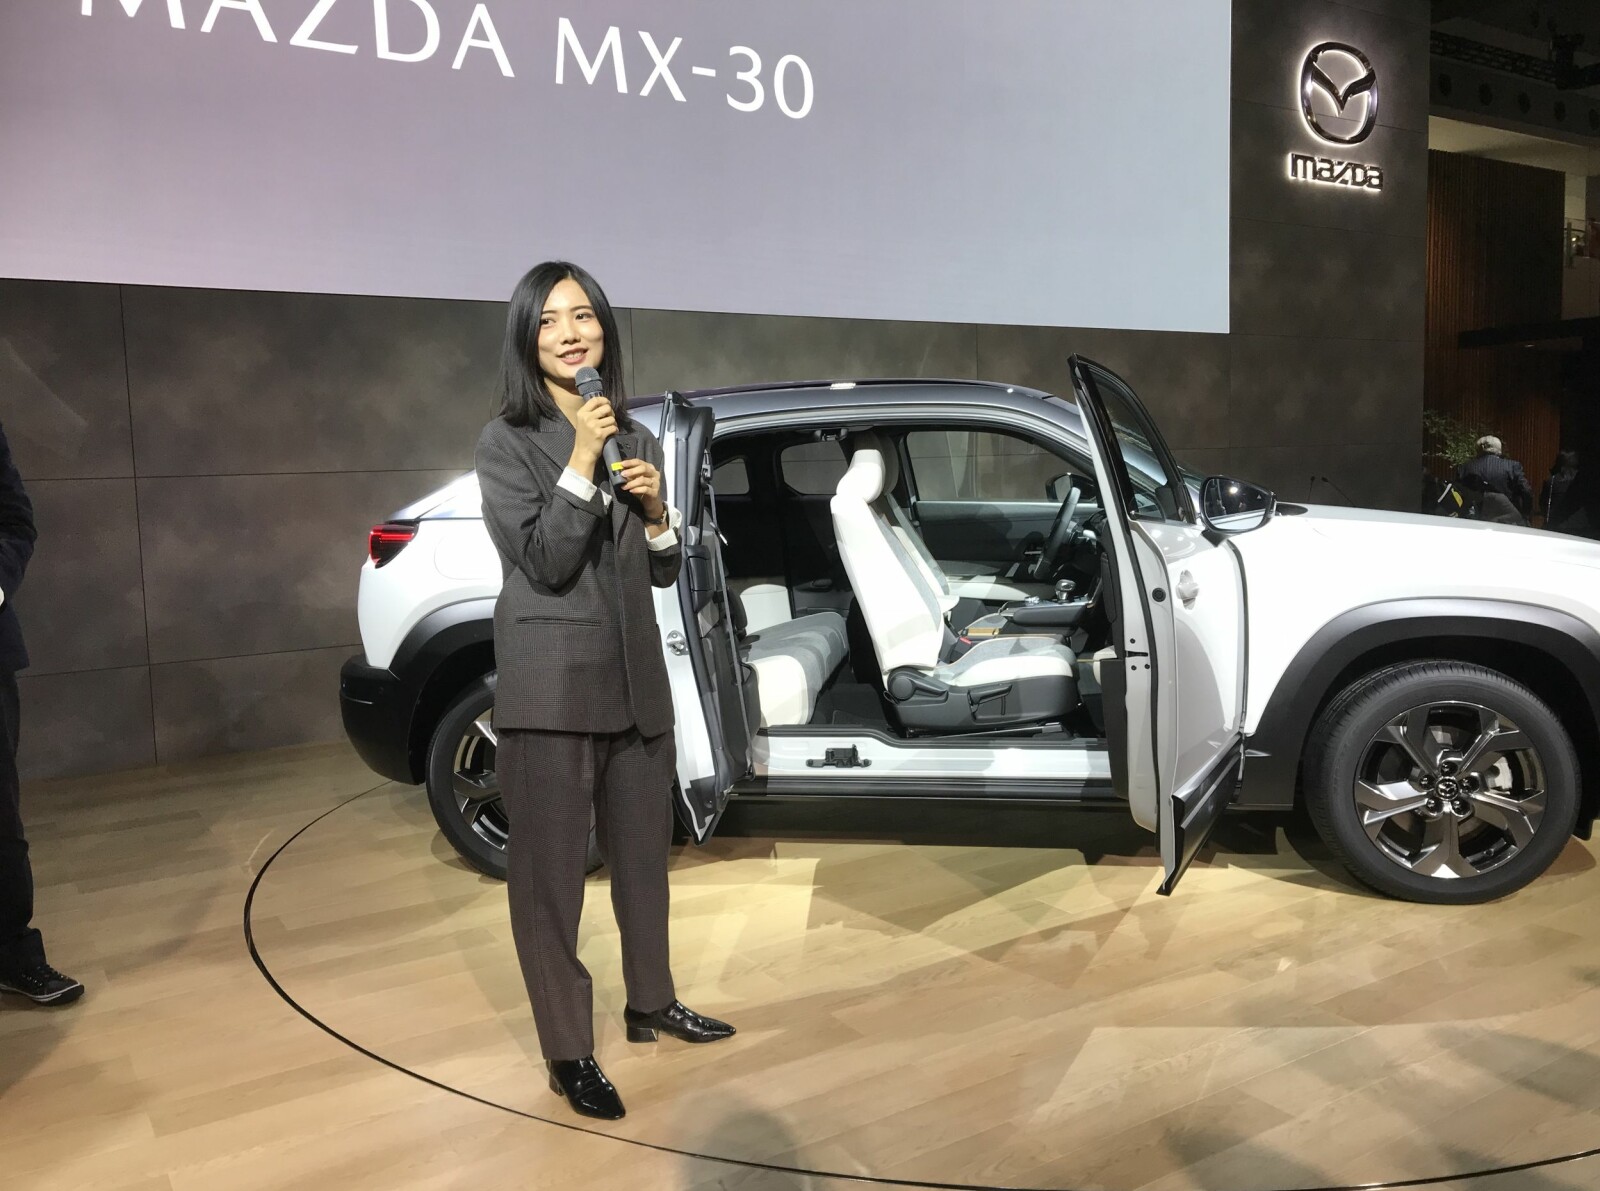 DØRER: Mazda MX-30 kommer med bakhengslede dører, noe som er ganske uvanlig. Xintong Li har vært ansvarlig for interiørdesign og materialvalg.